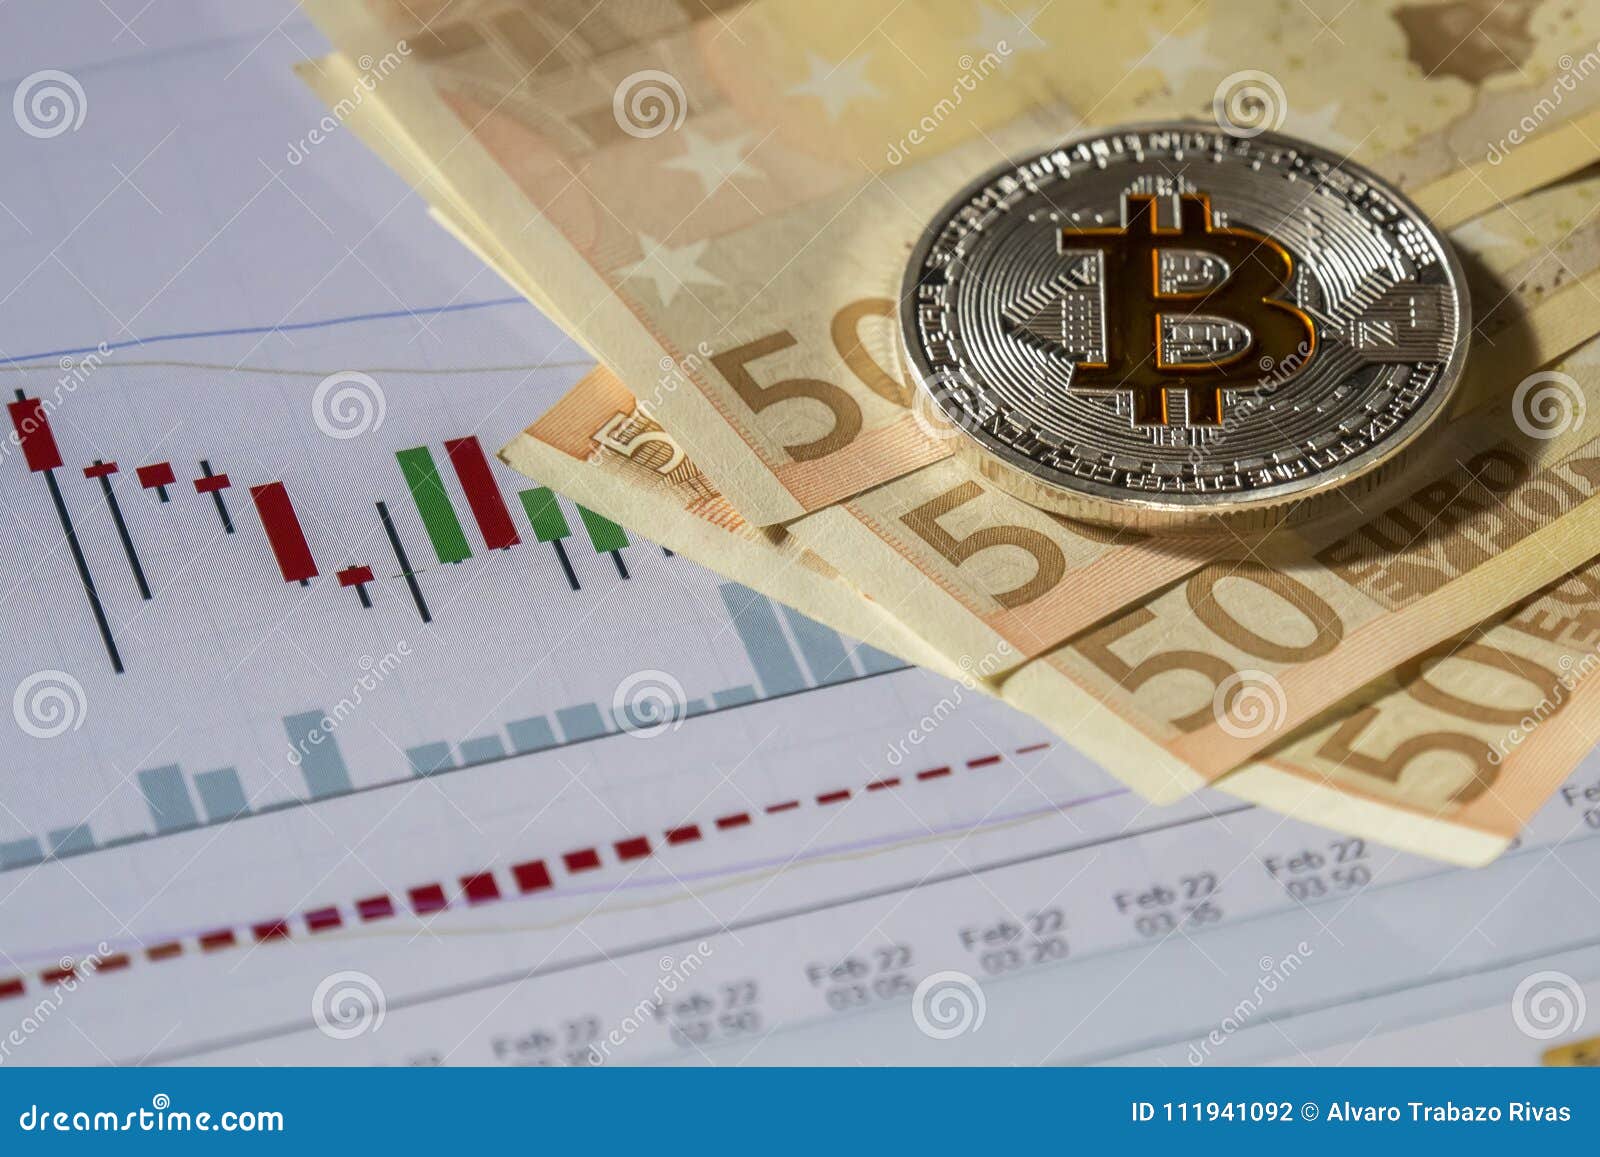 trading euro bitcoin